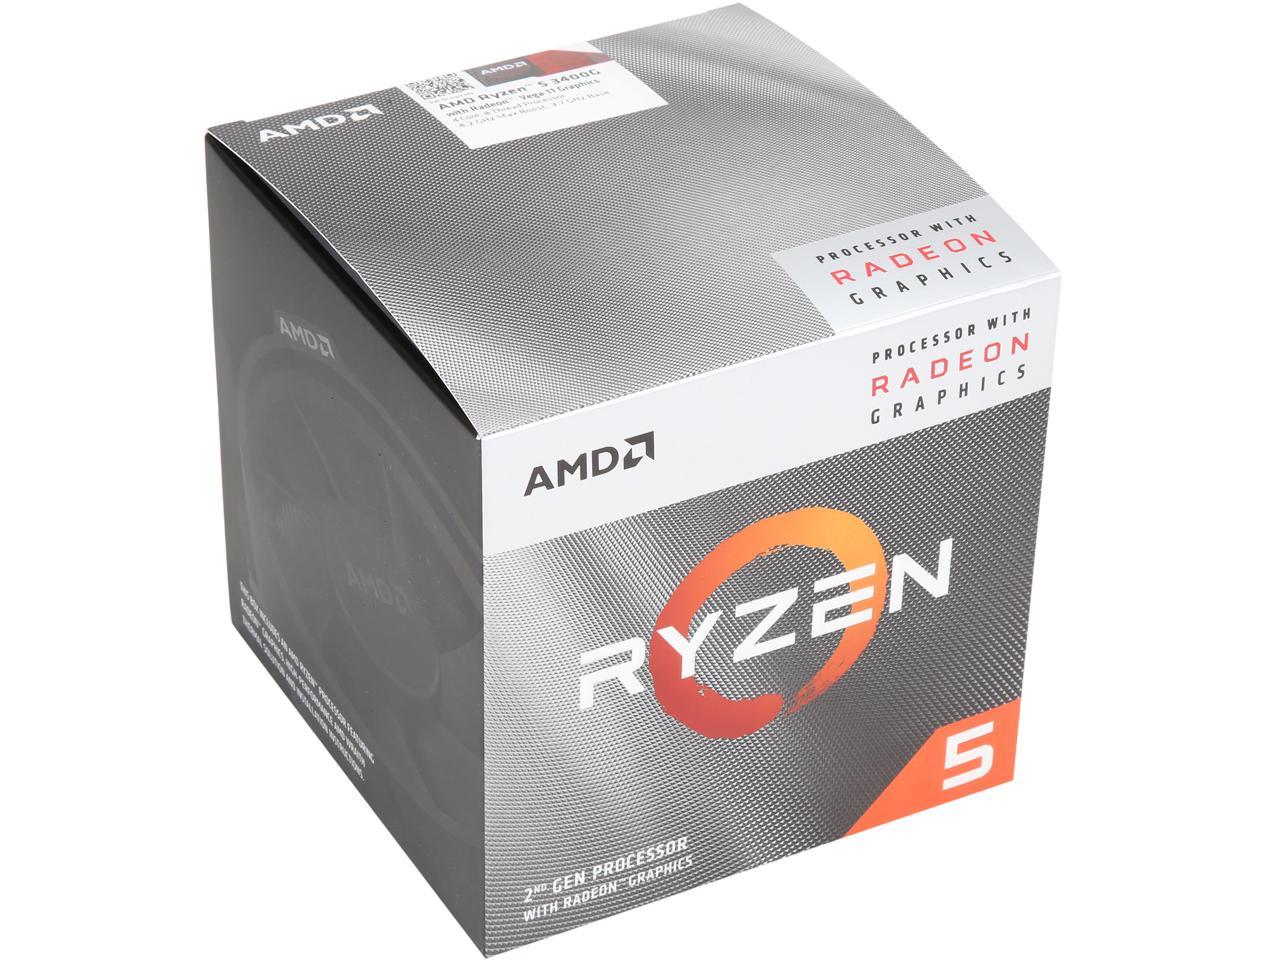 AMD RYZEN 5 3400G 4-Core 3.7 GHz (4.2 GHz Max Boost) Socket AM4 65W YD3400C5FHBOX Desktop Processor